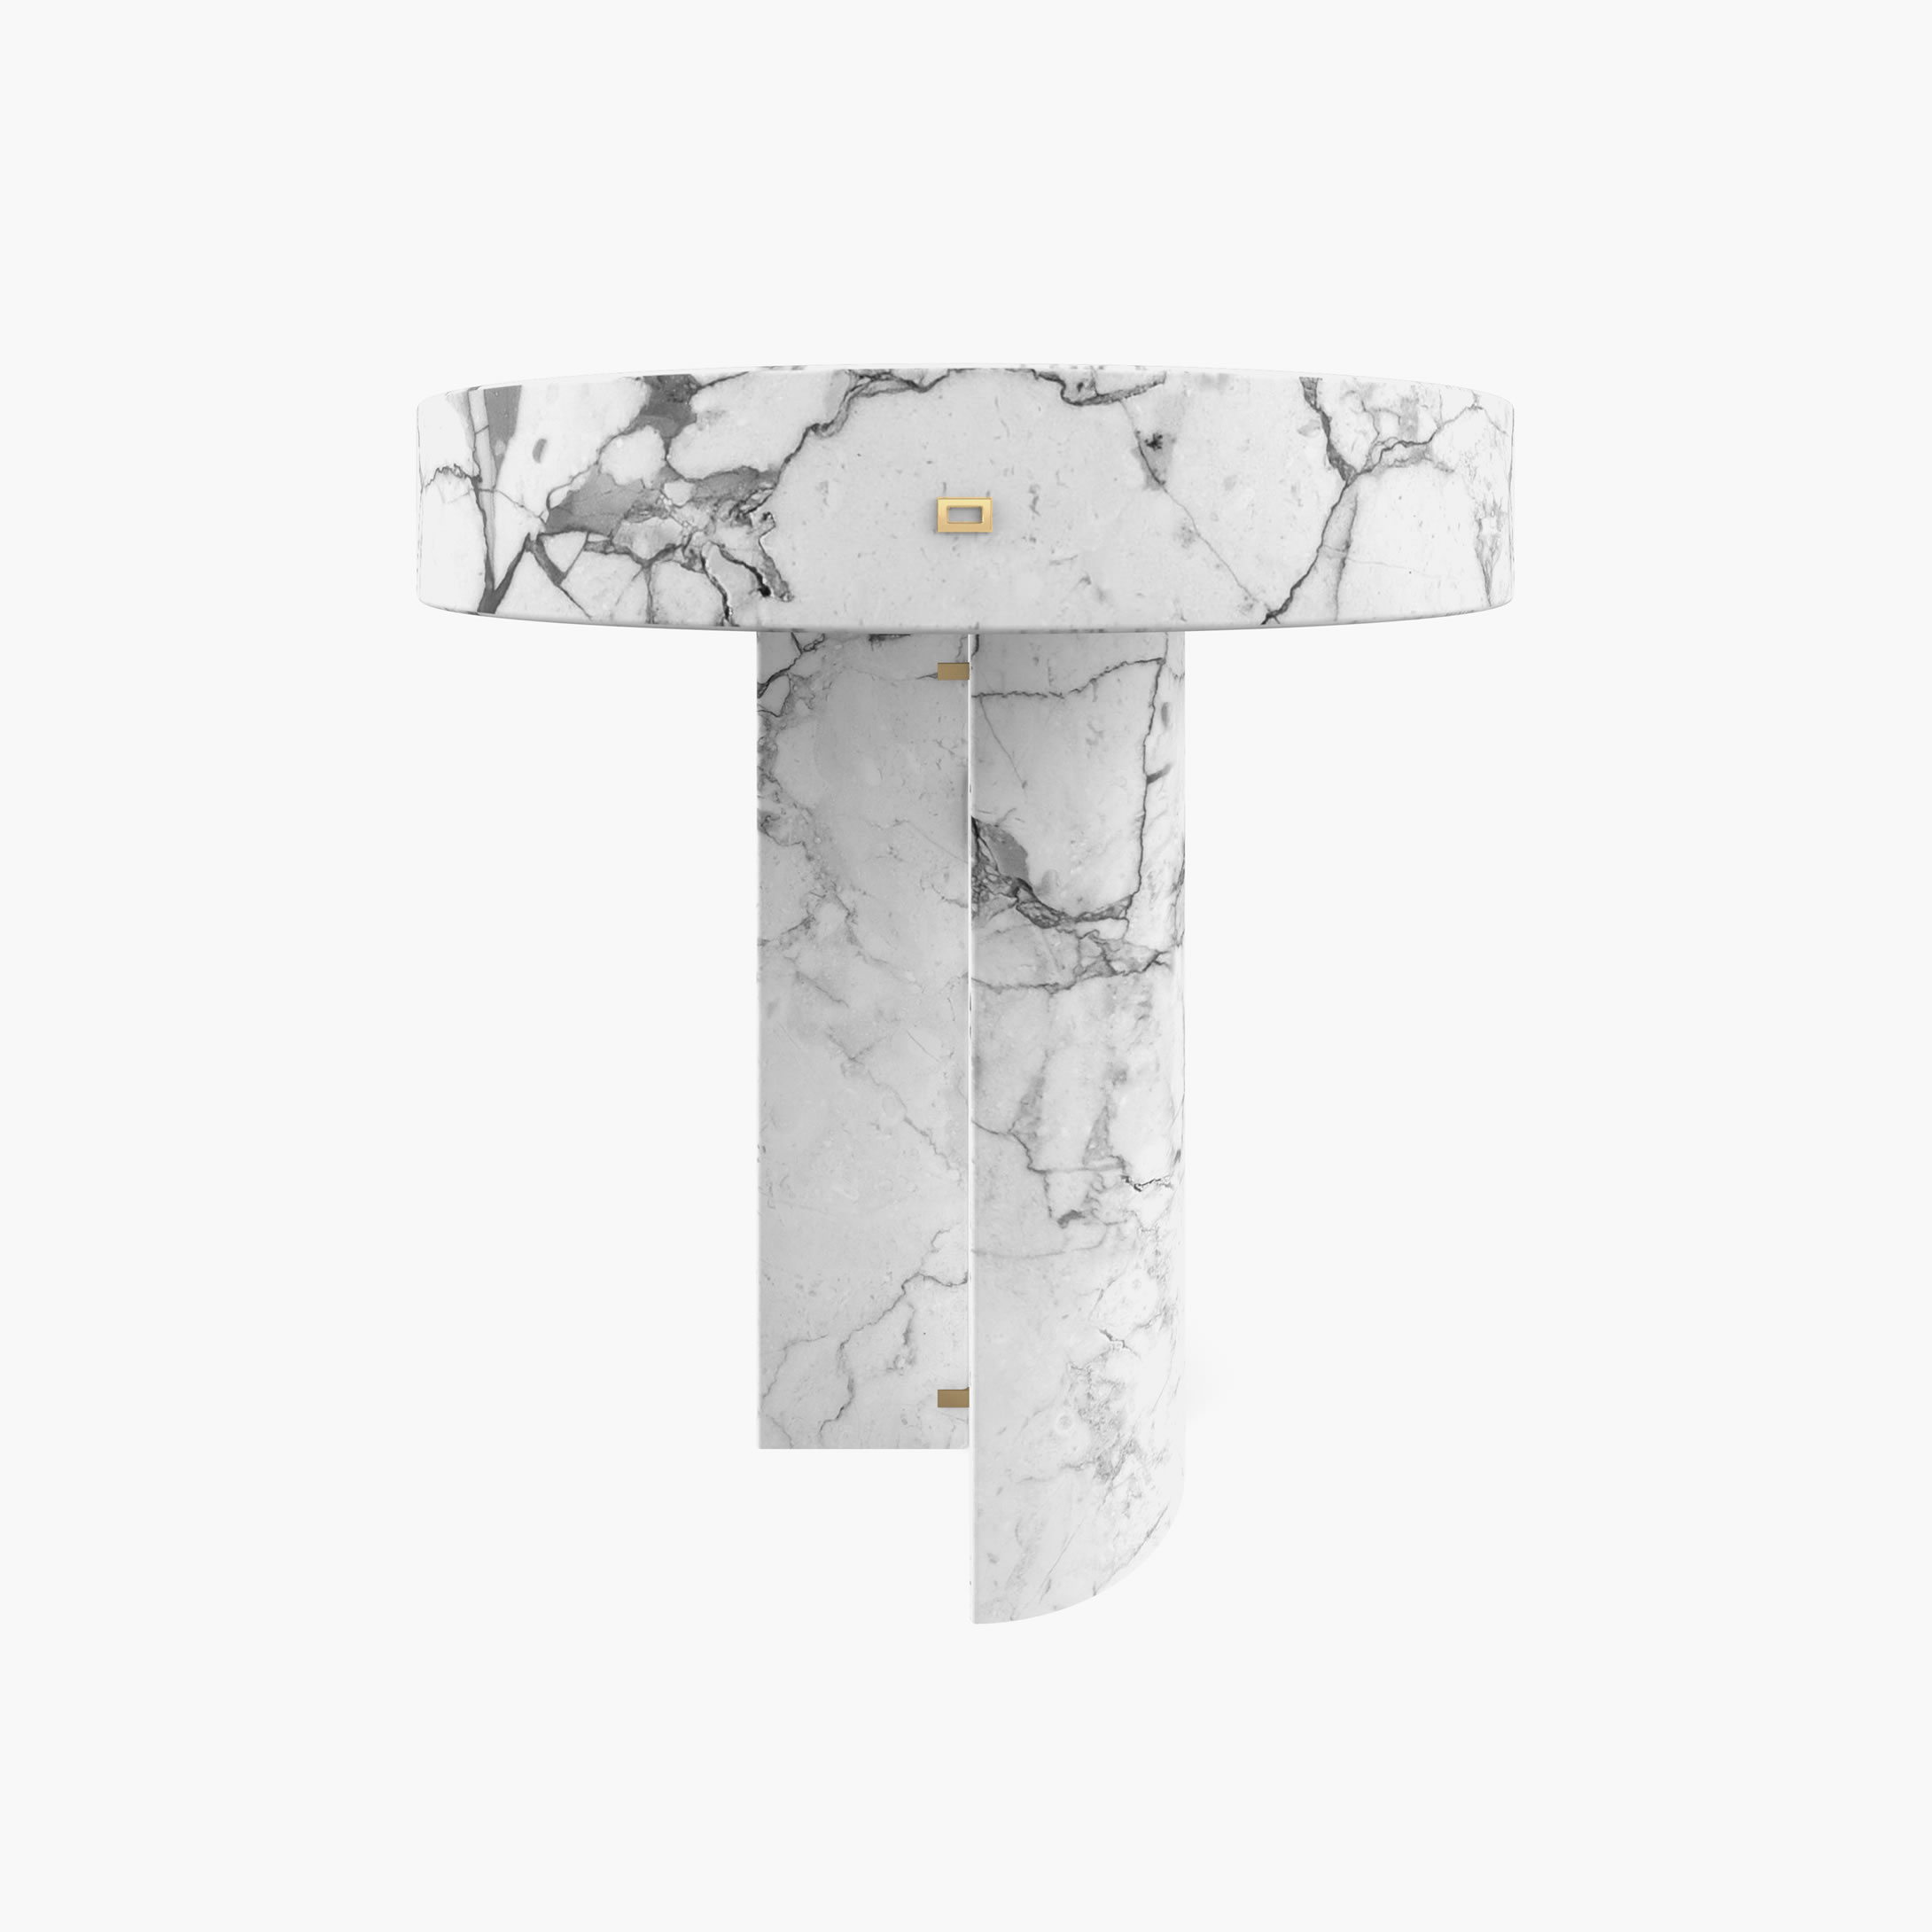 Beistelltisch Zylinder Quader Prisma Weiss Arabescato Marmor rein Wohnzimmer Meisterwerke Beistelltische FS 128 b FELIX SCHWAKE